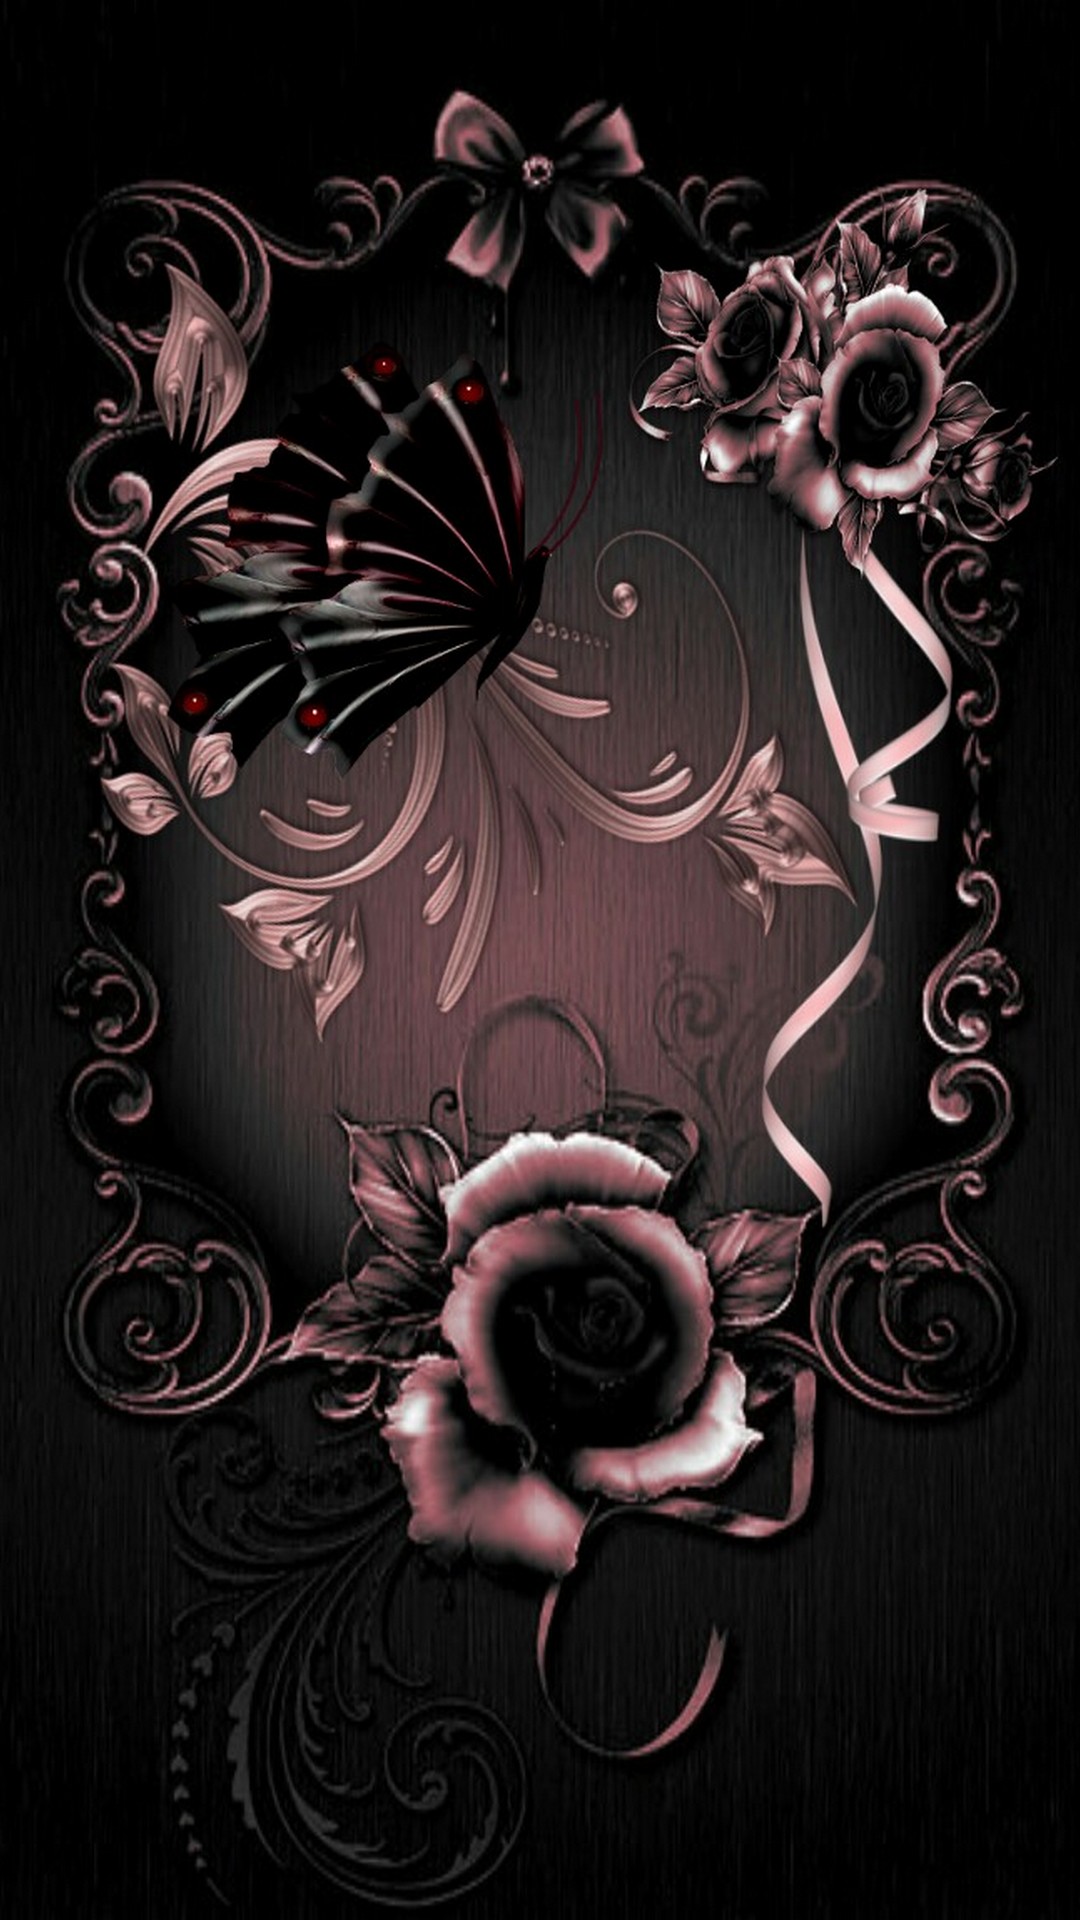 rose gold iphone wallpaper,illustration,mobile phone case,pattern,floral design,graphic design